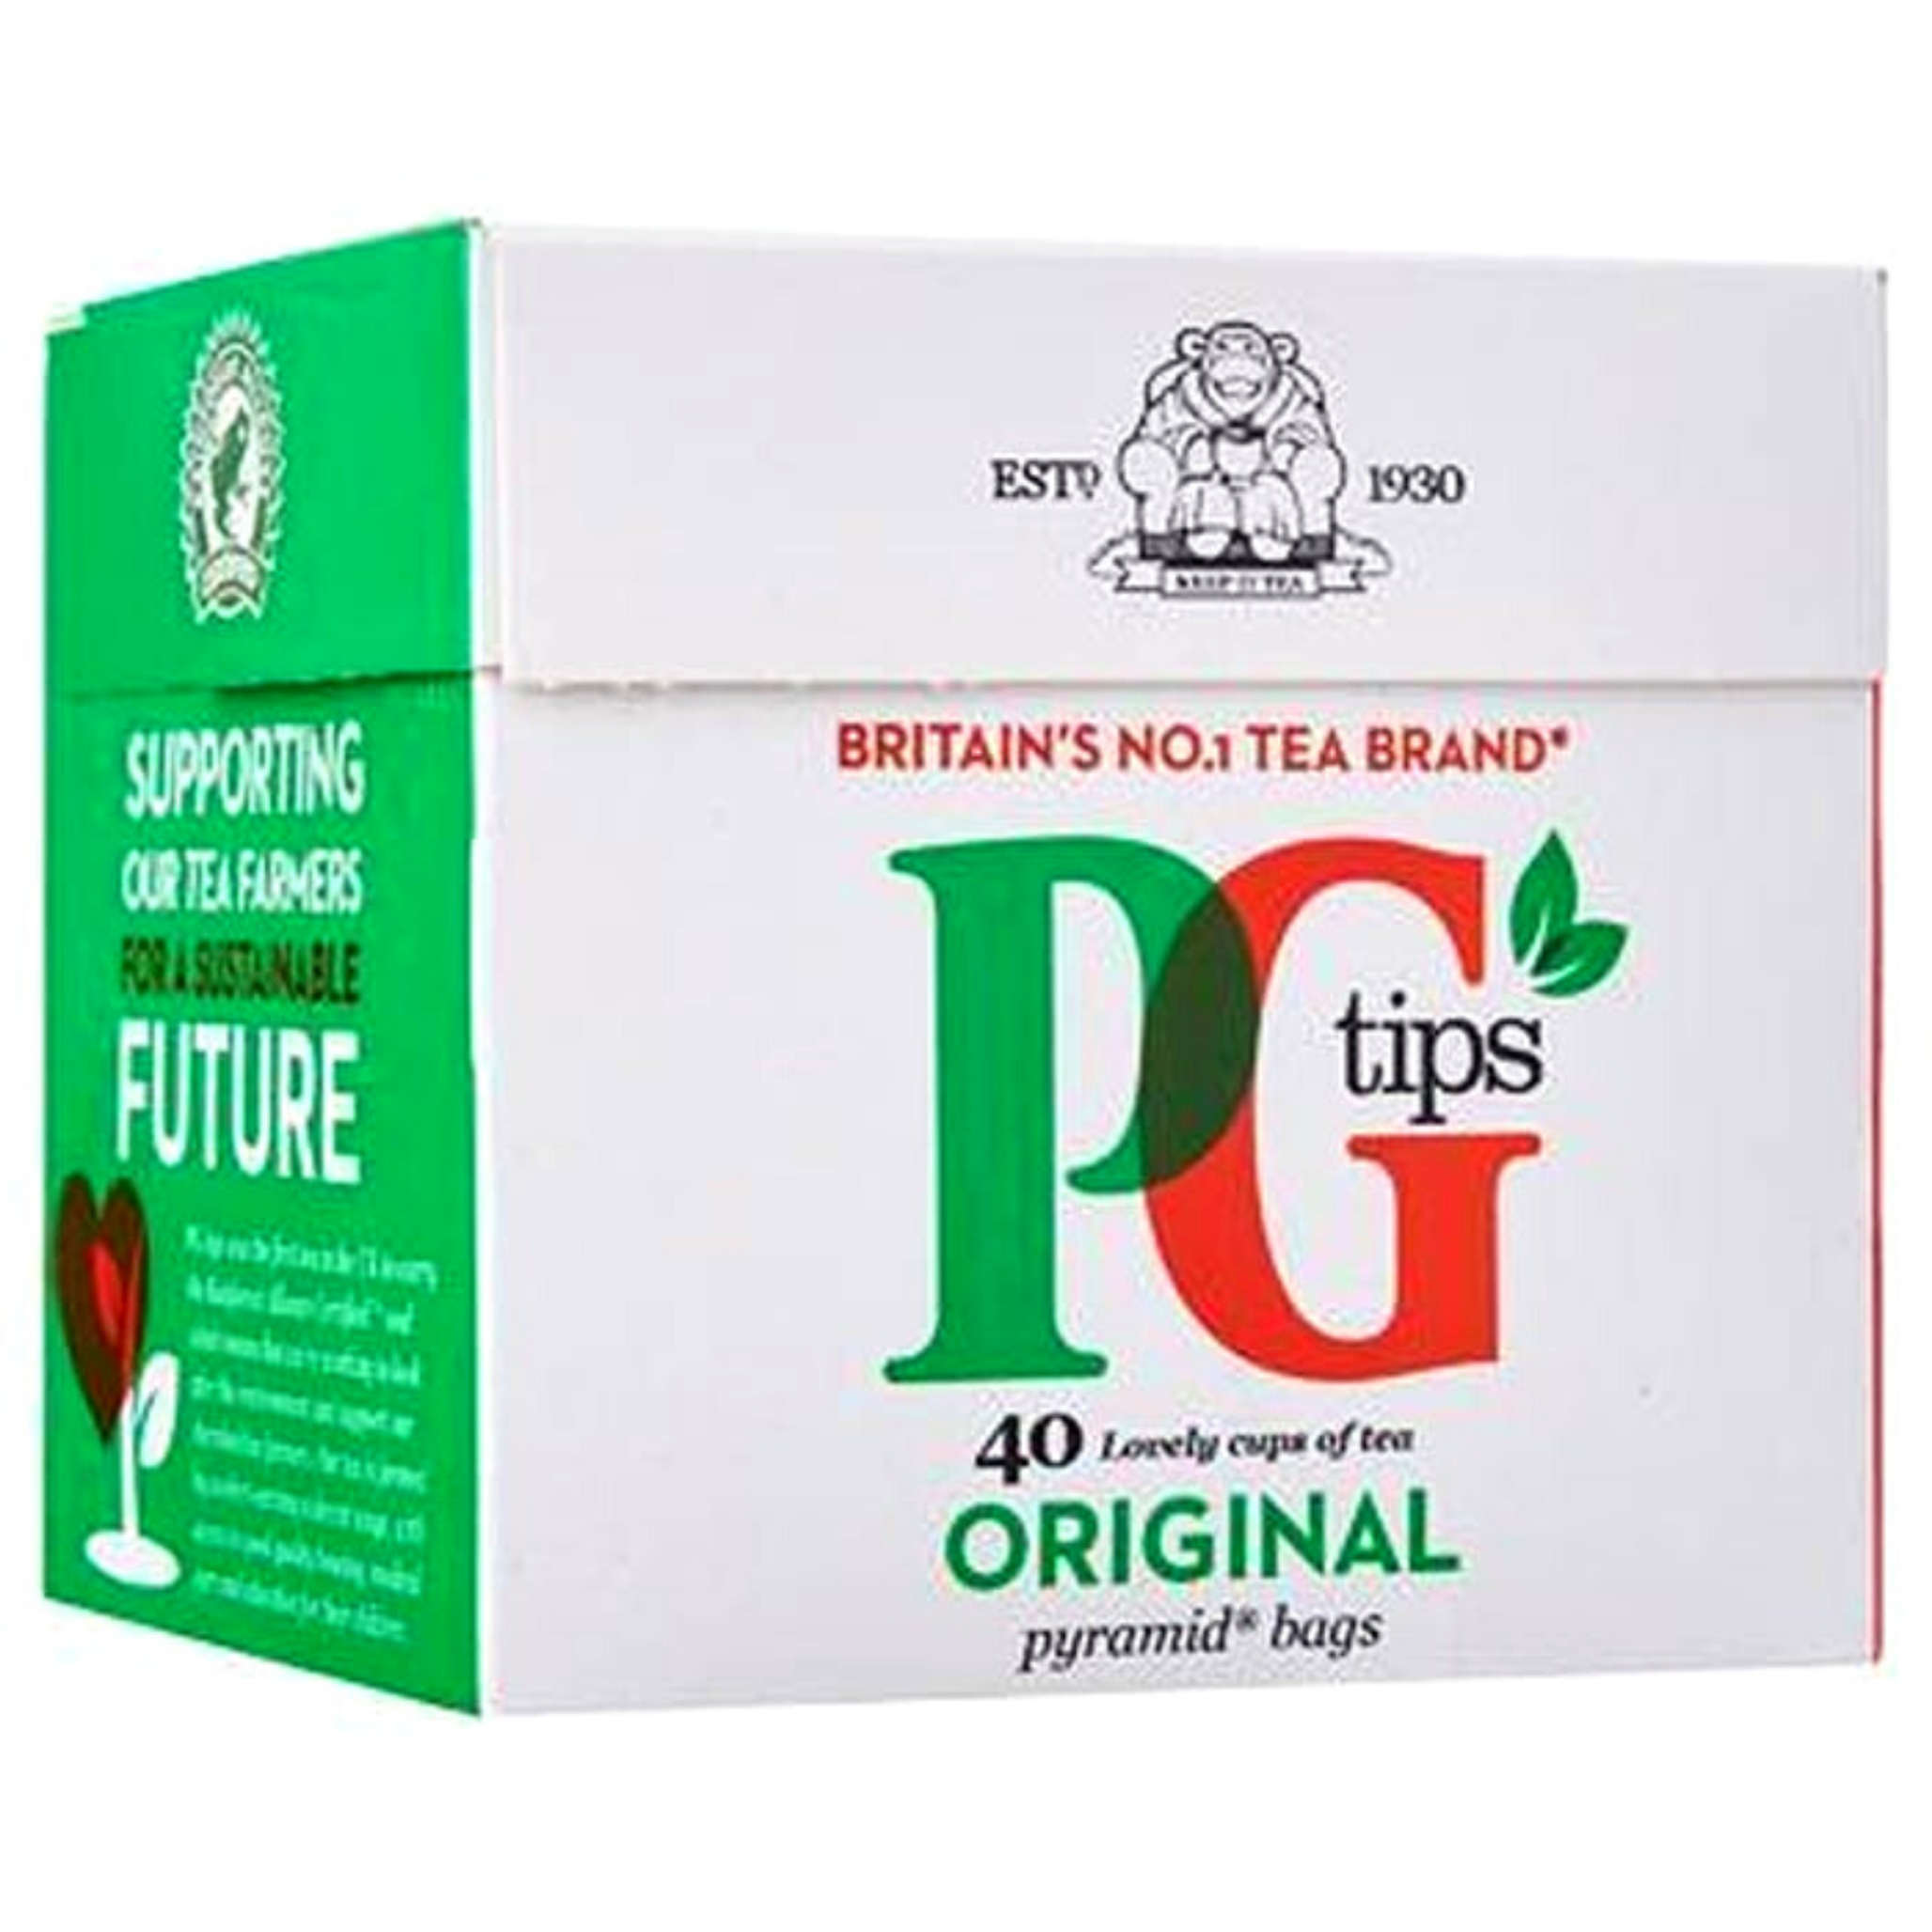 PG Tips - Bolsas de té con forma de pirámide (40 unidades), color negro